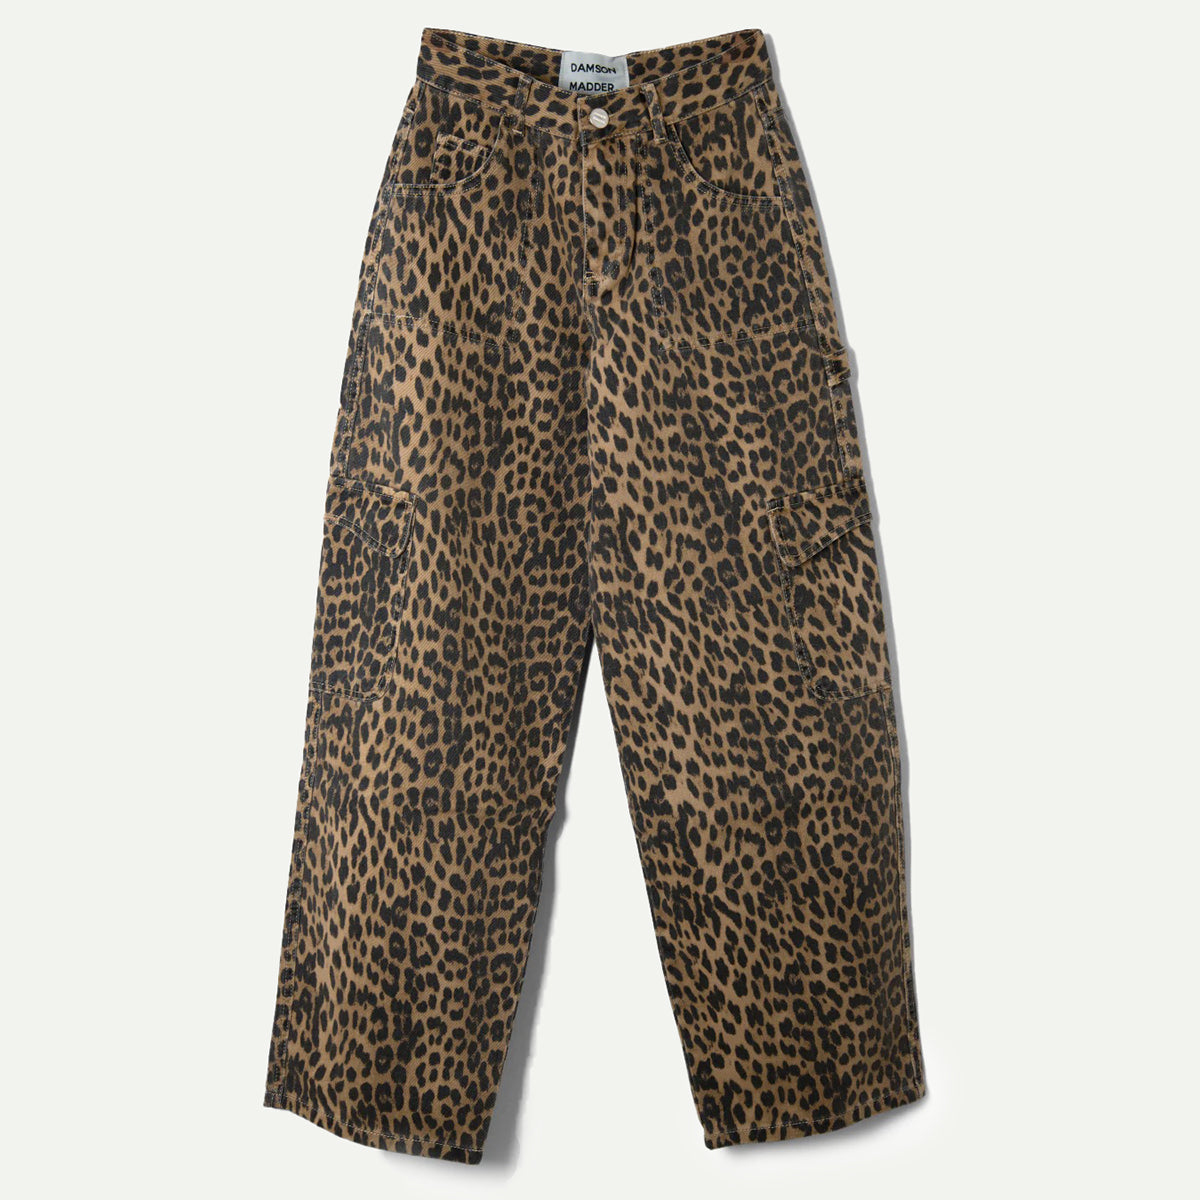 Damson Madder Leopard Dion Cargo Jeans